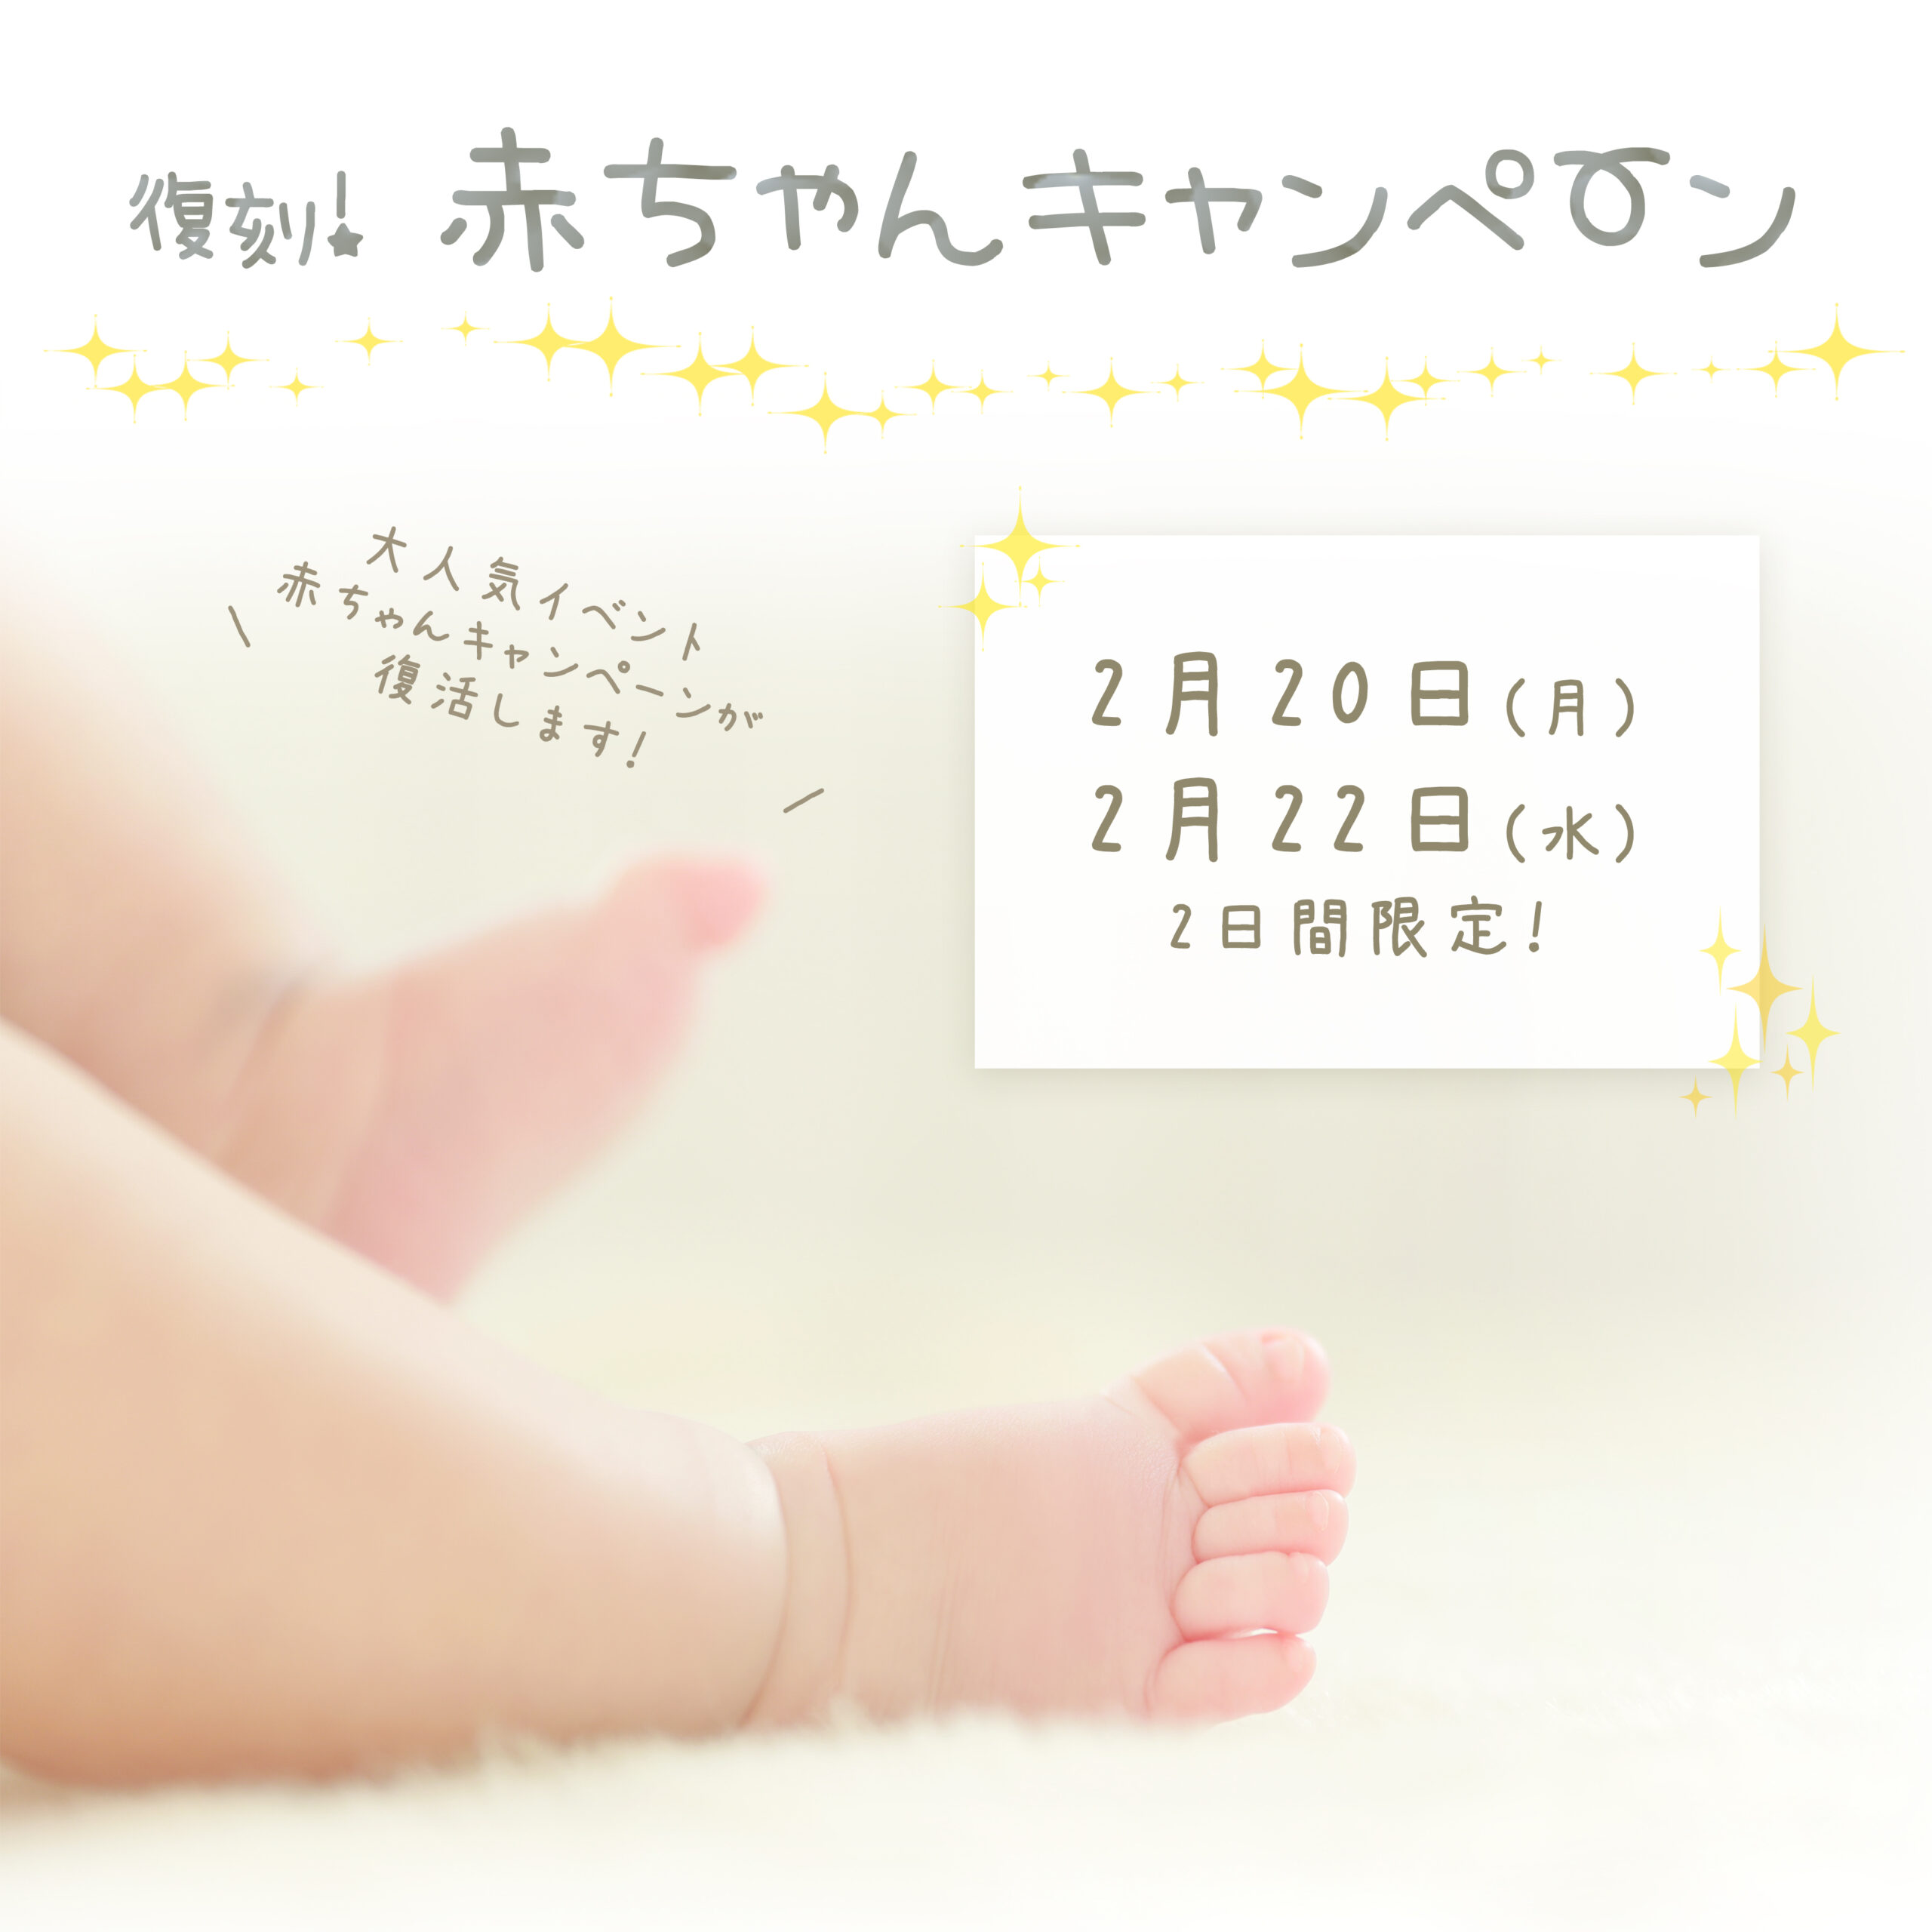 赤ちゃんキャンペーンのお知らせ☆